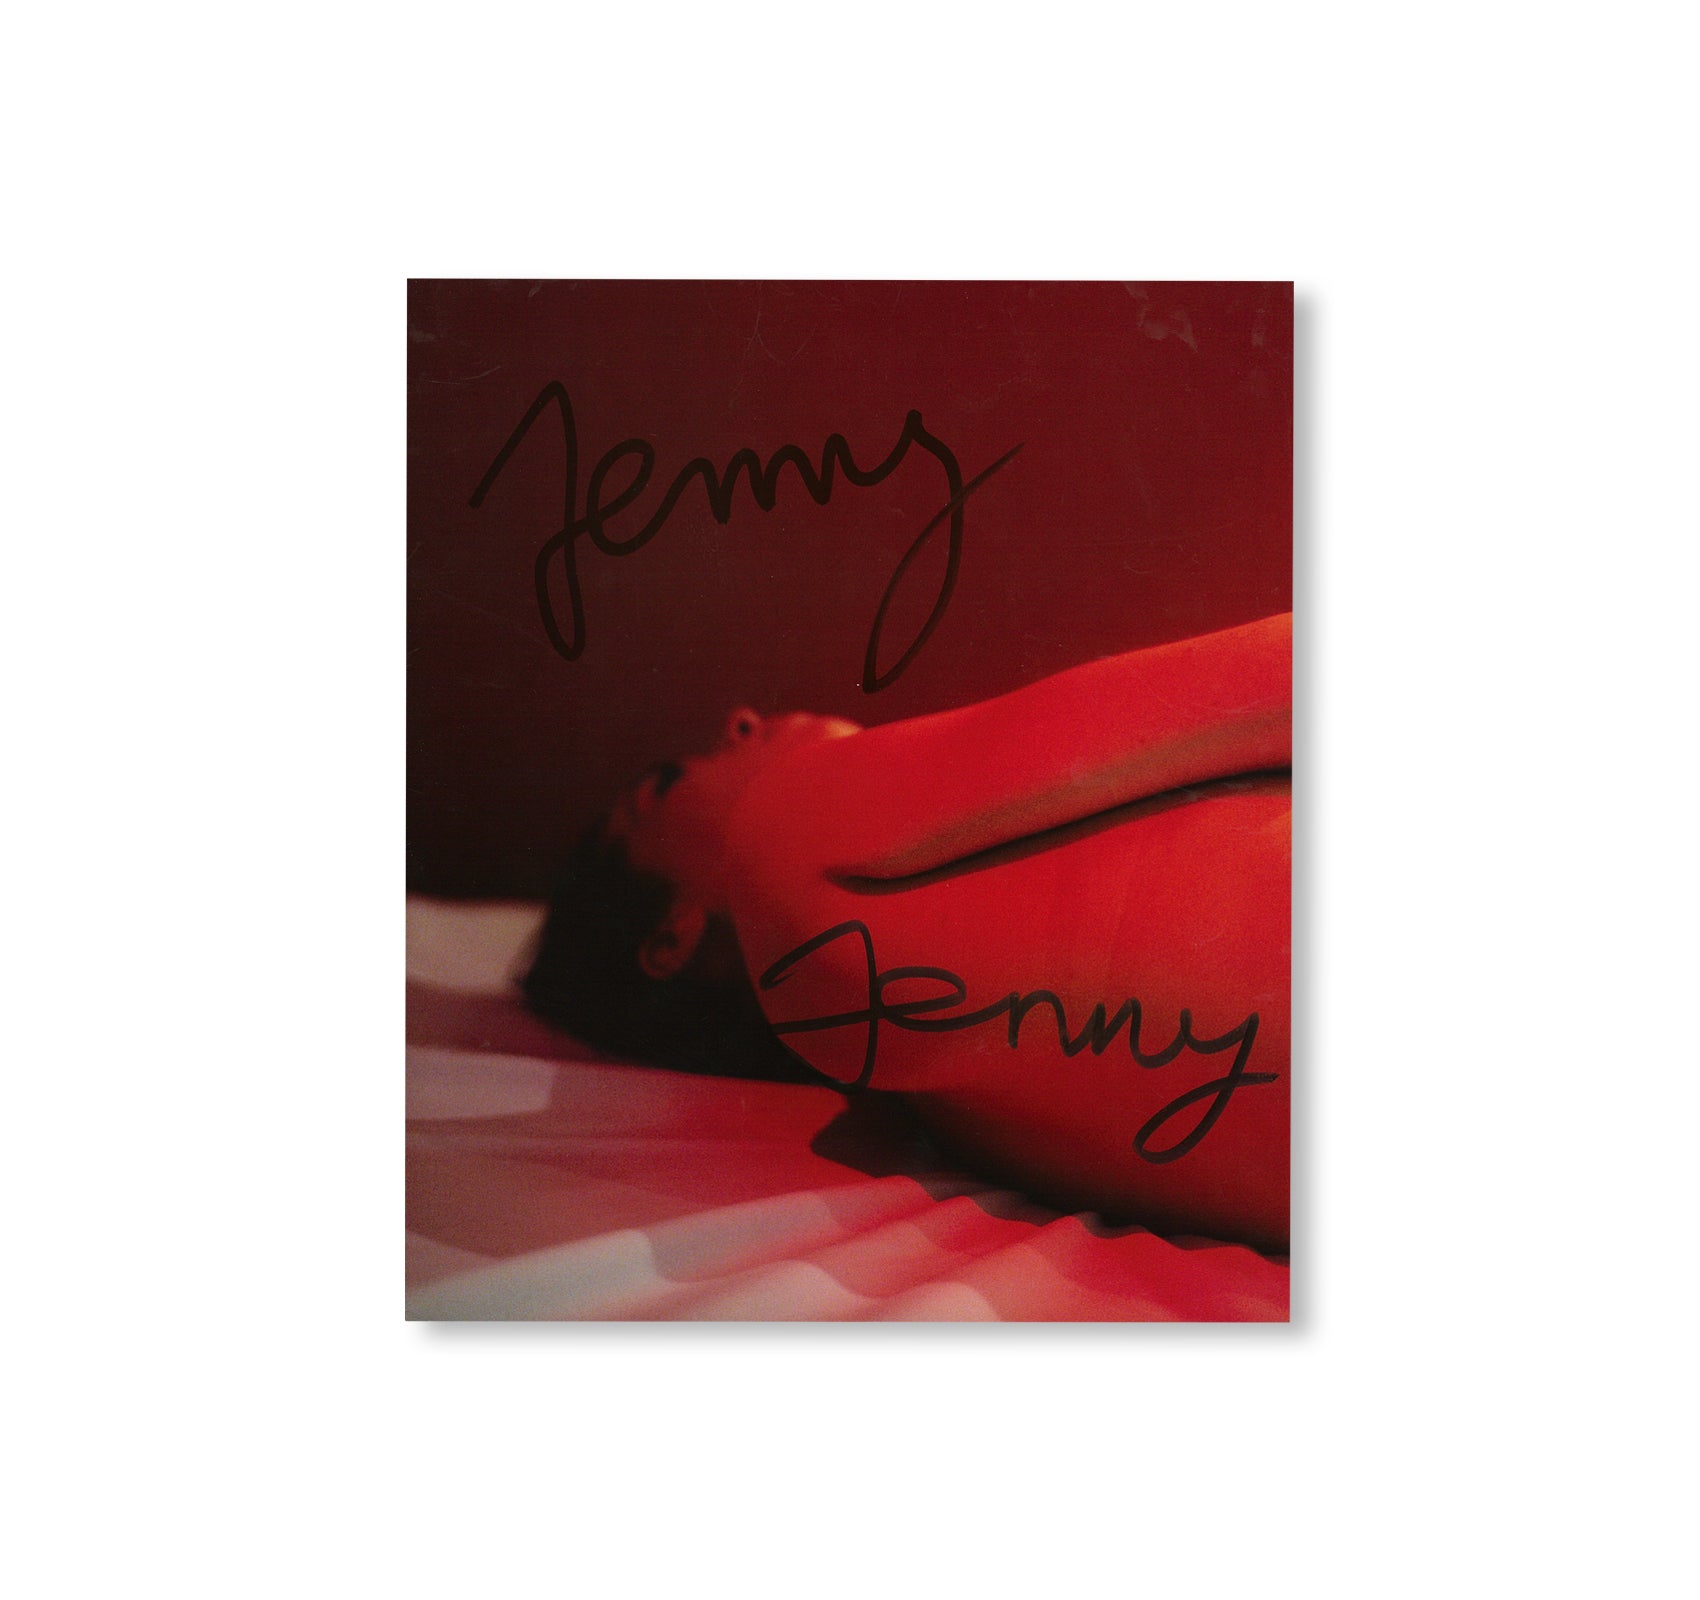 JENNY JENNY by Tobias Zielony